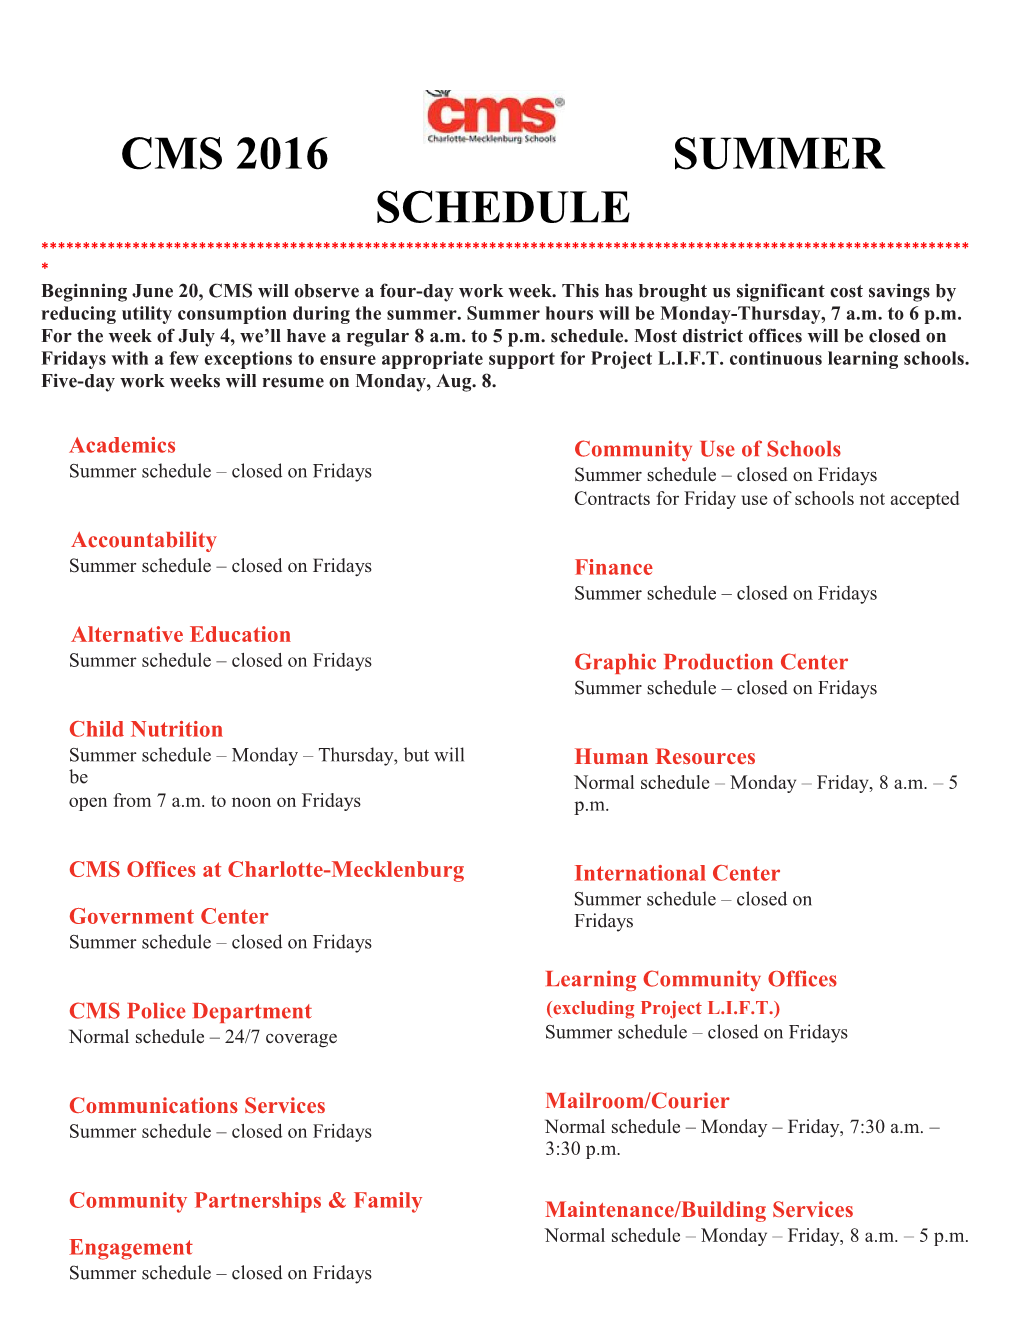 CMS Summer Calendar